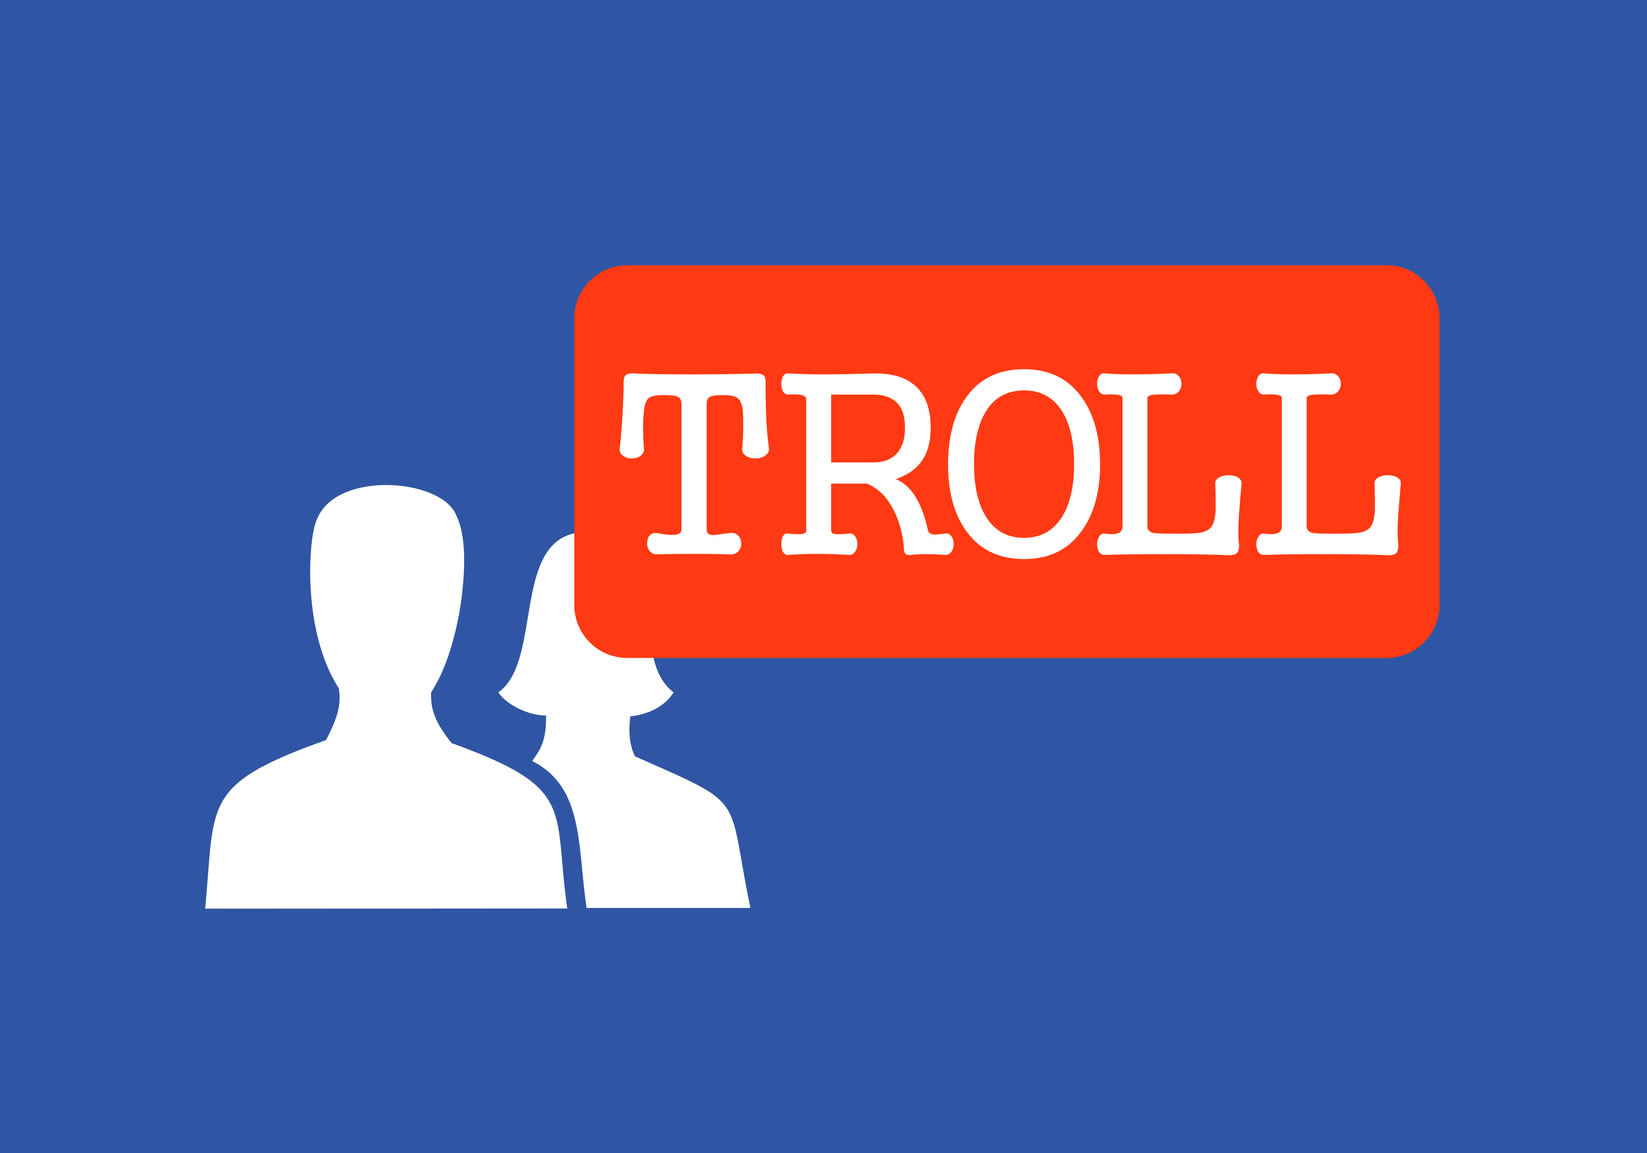 TROLL - Definição e sinônimos de troll no dicionário polonês